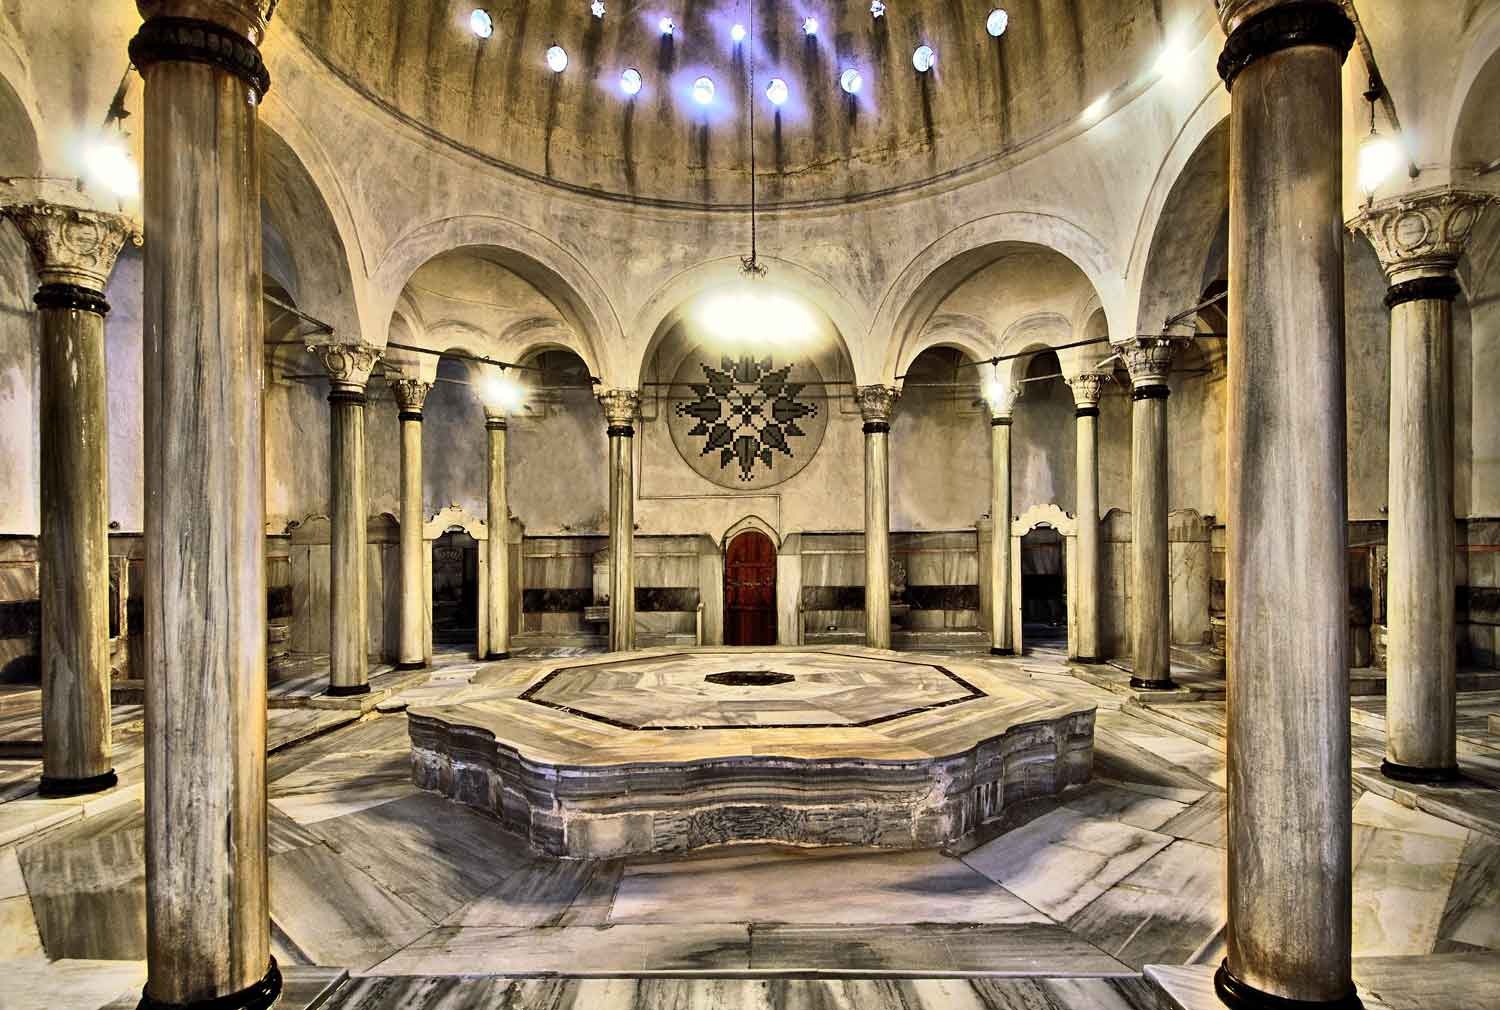 Turkish Baths